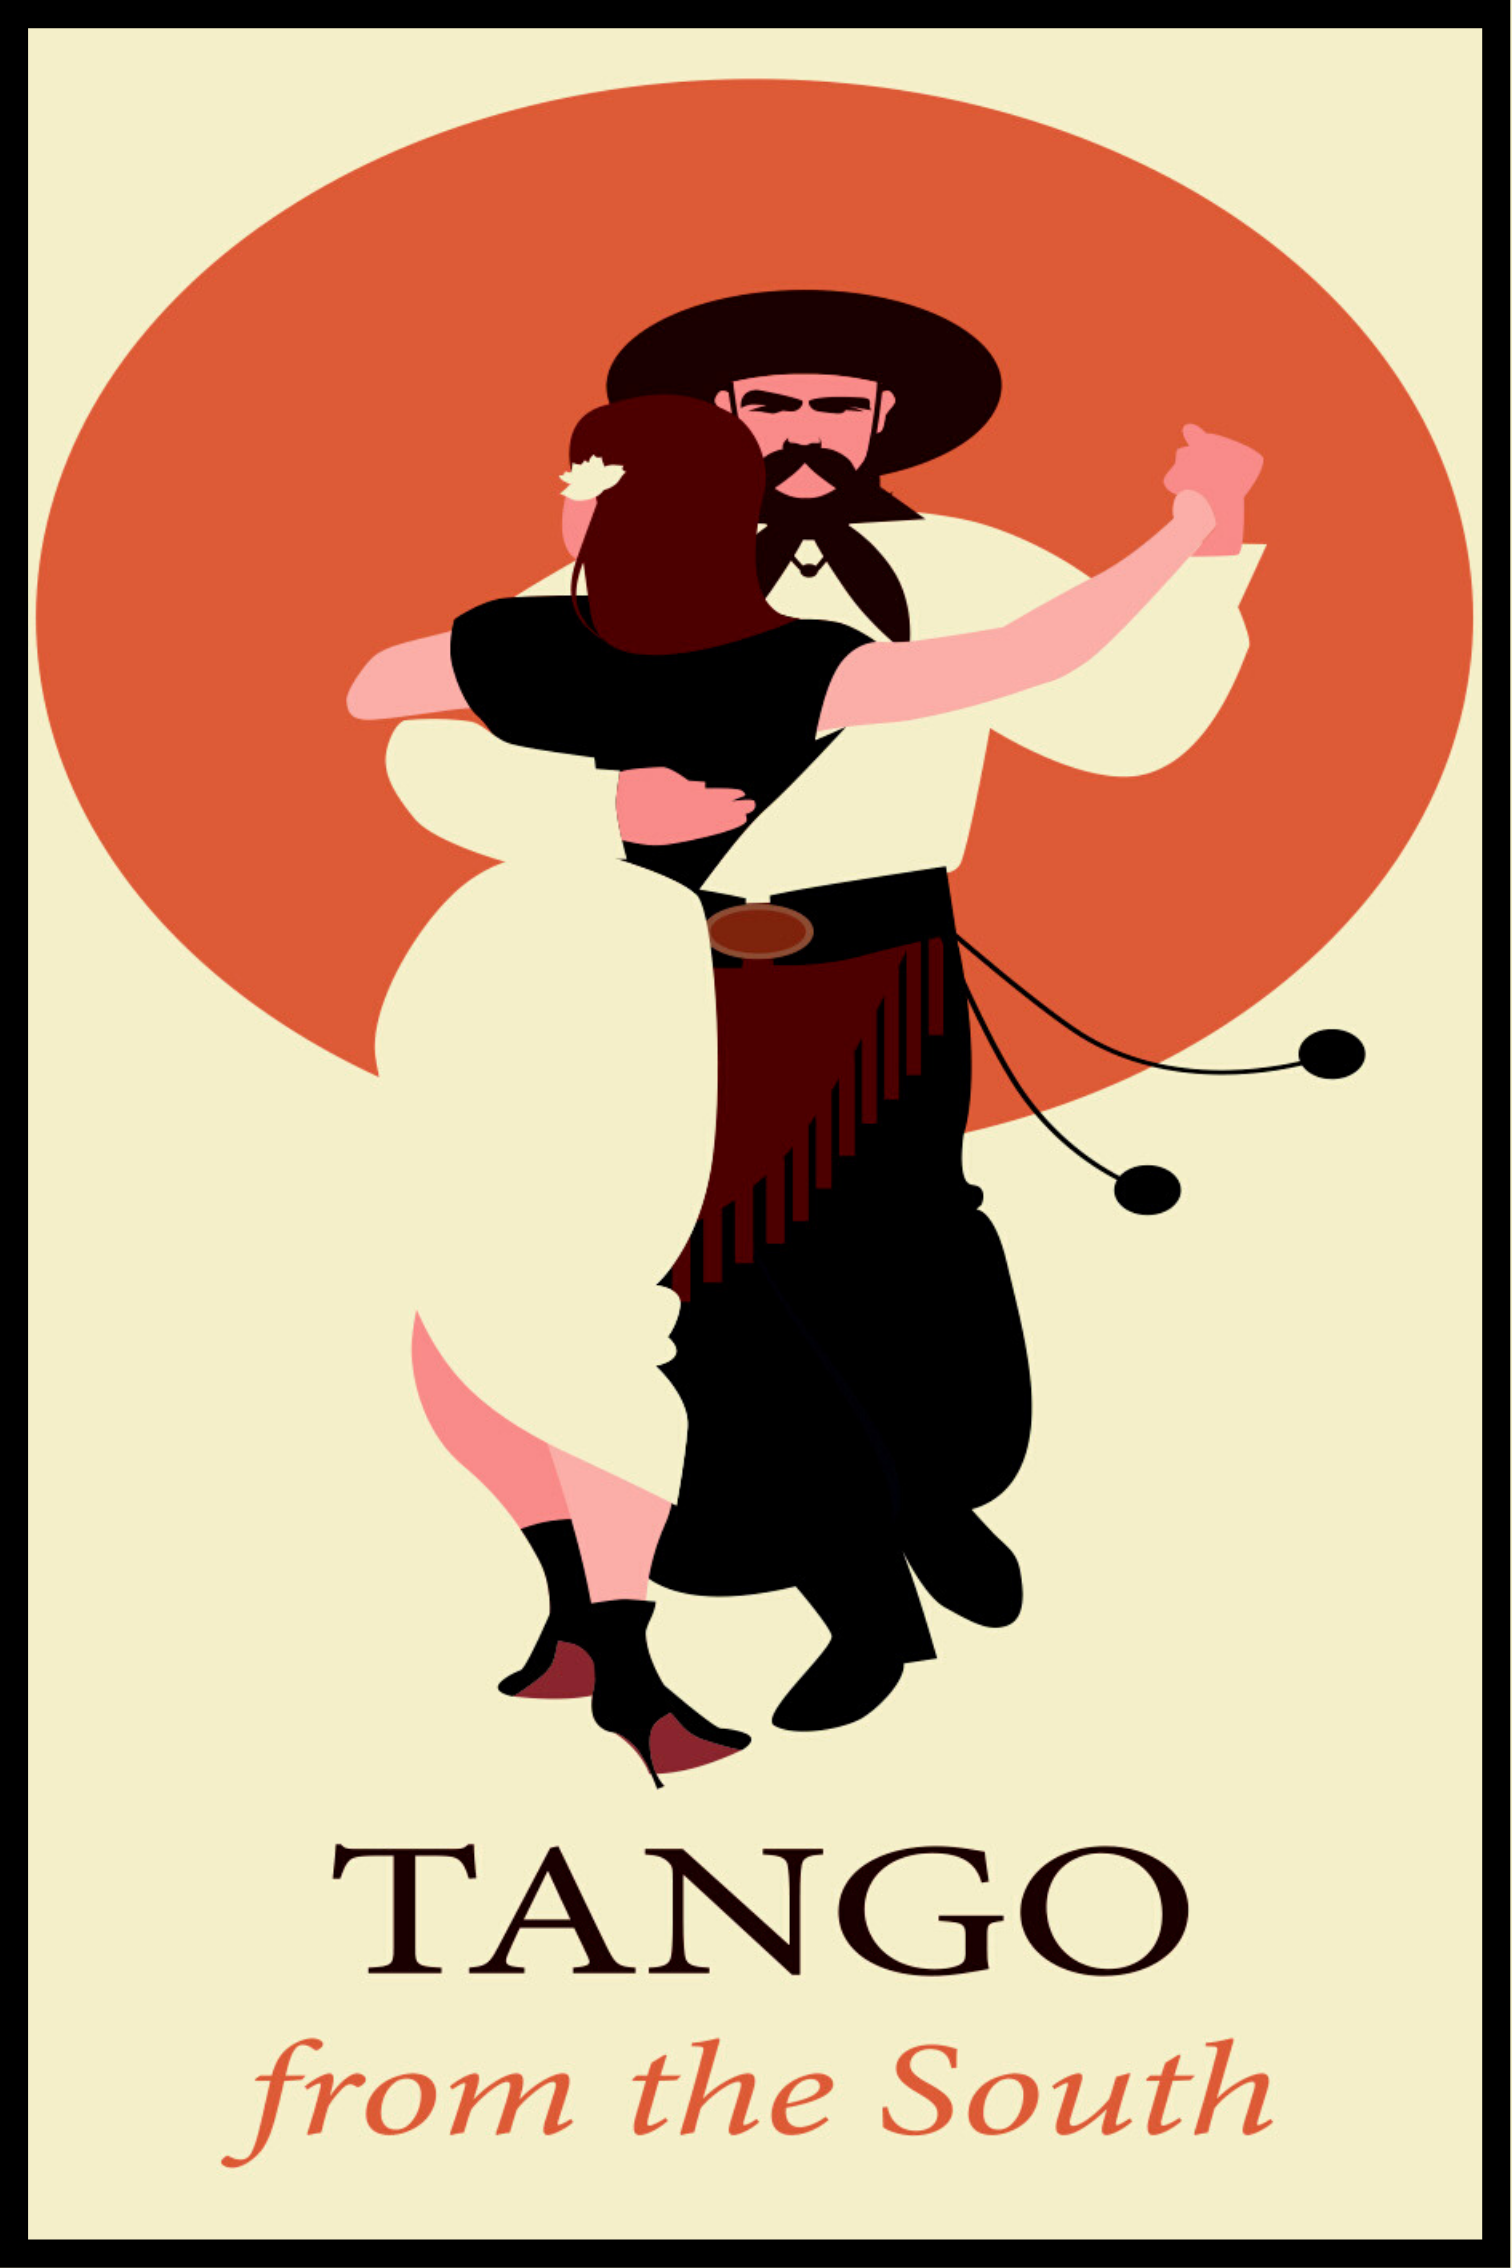 Tango affisch